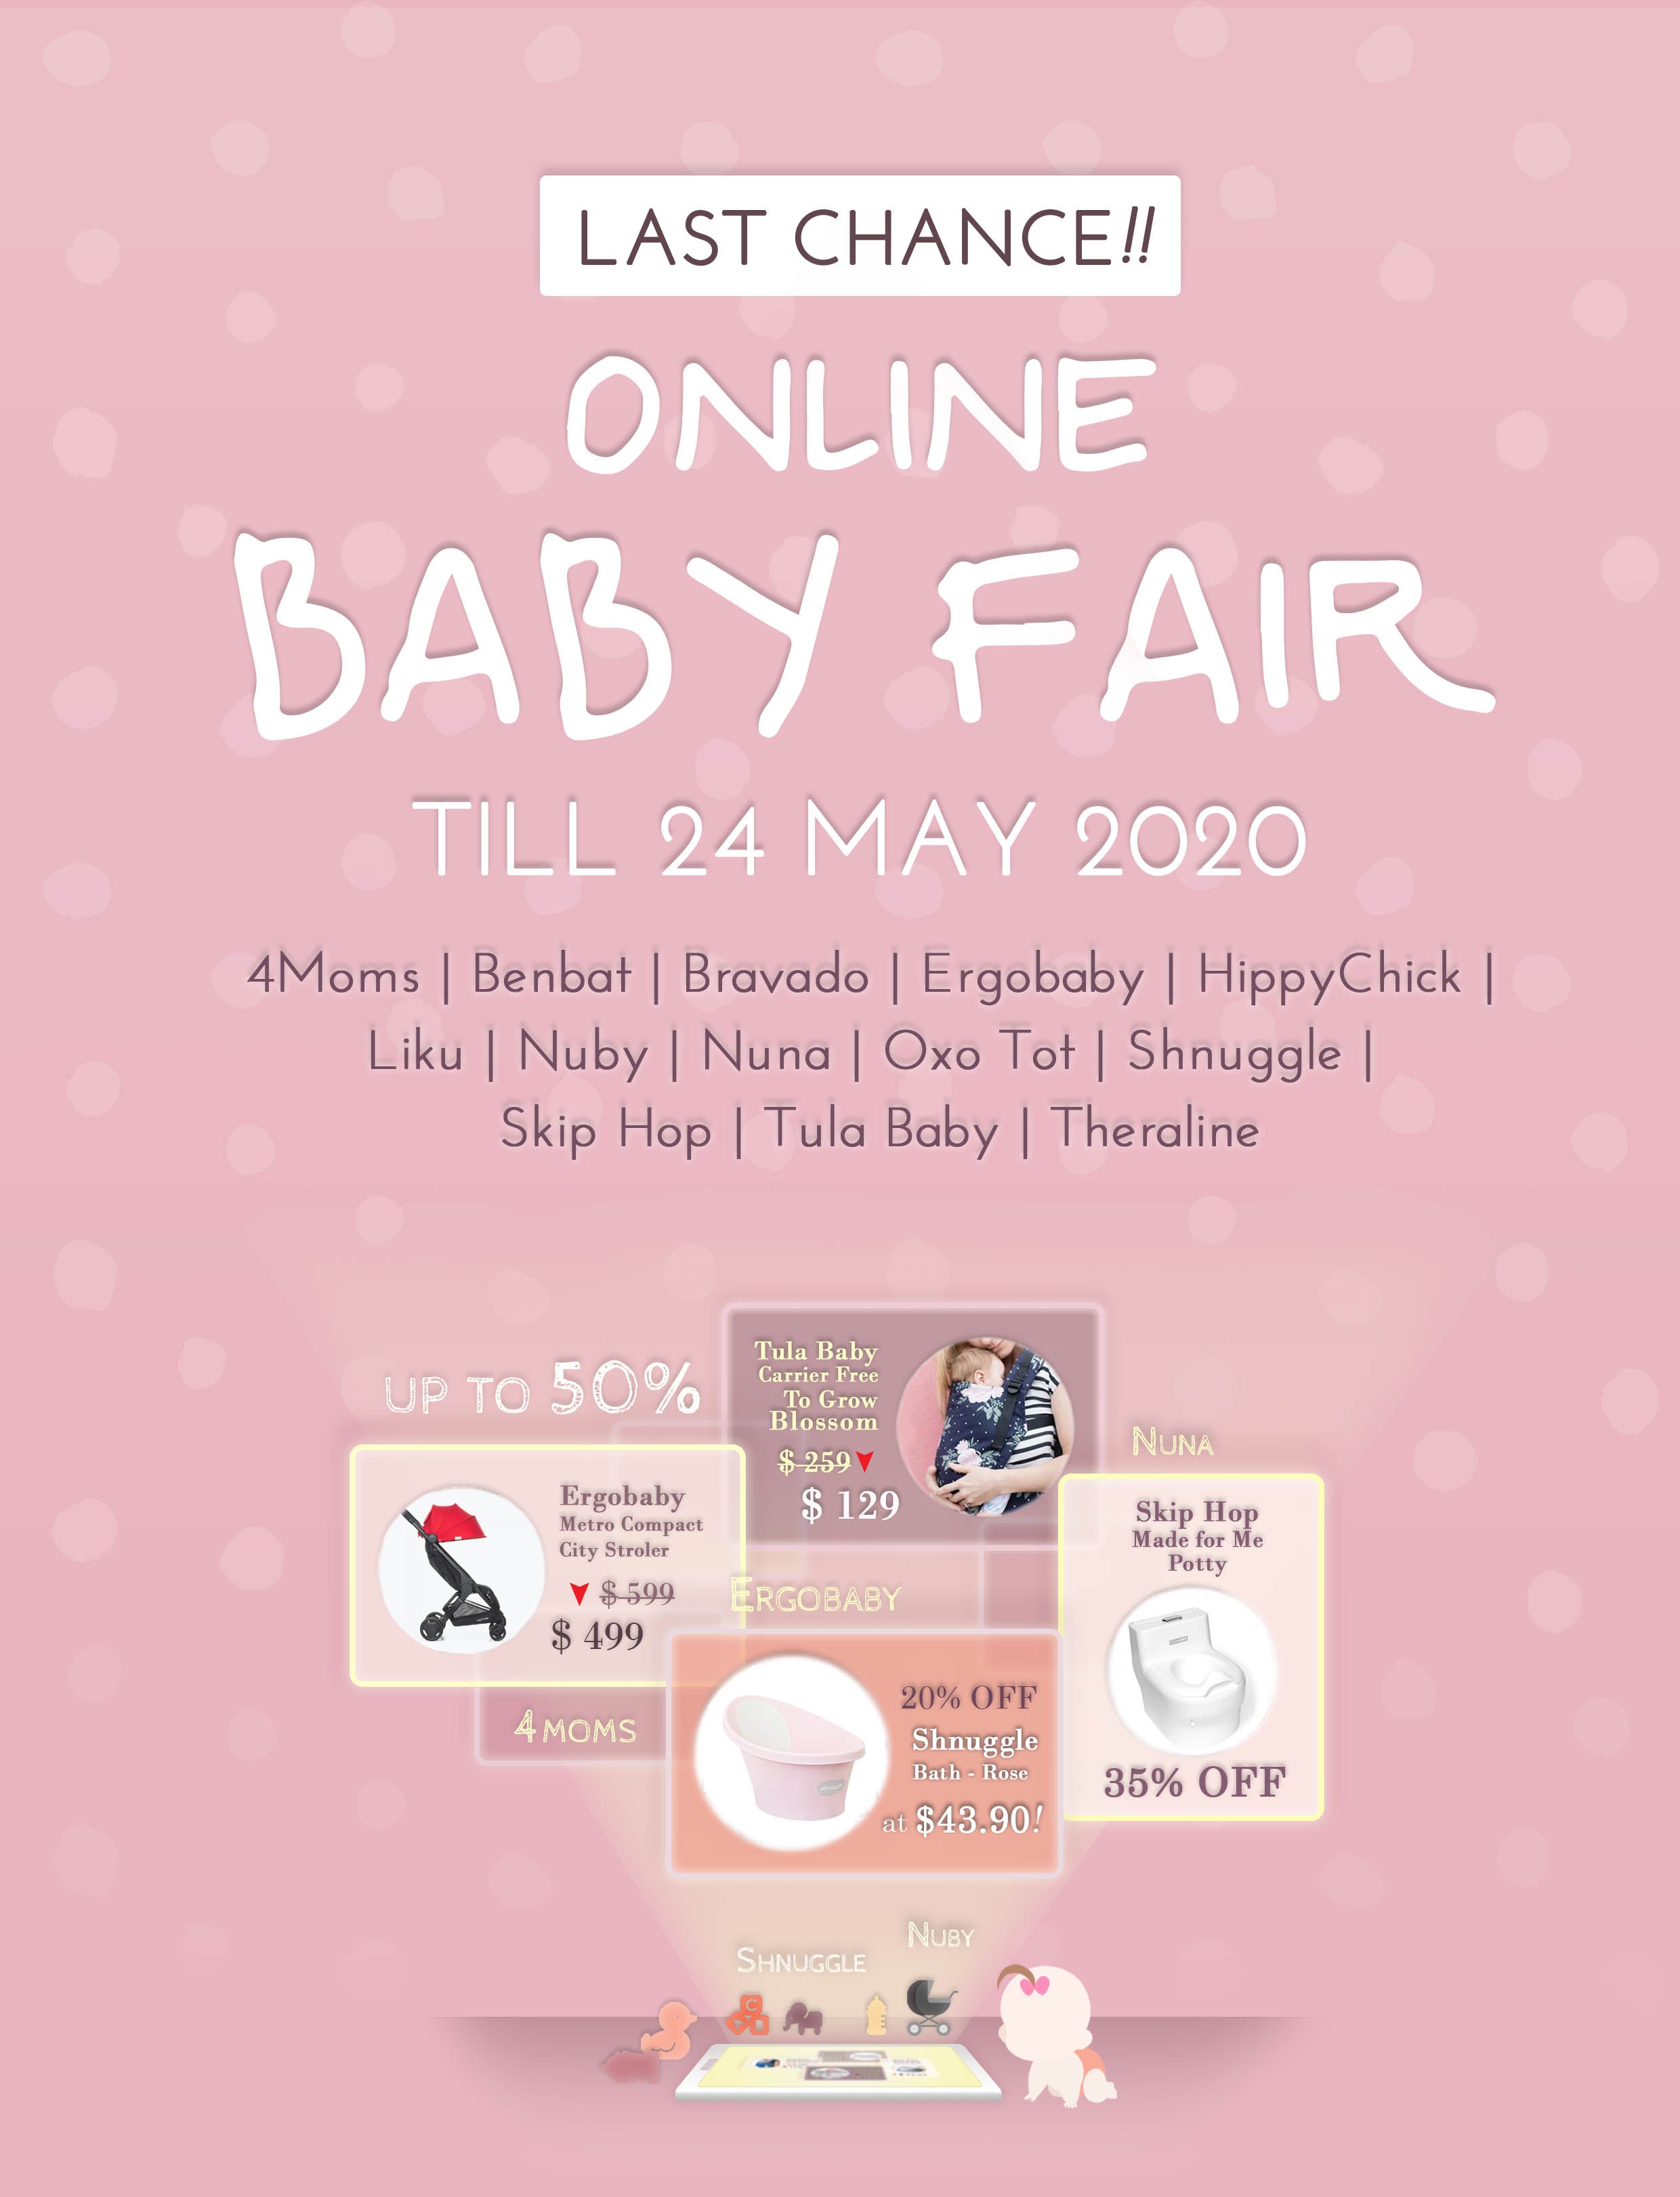 Online Baby Fair till 24 May 2020 (Sunday)